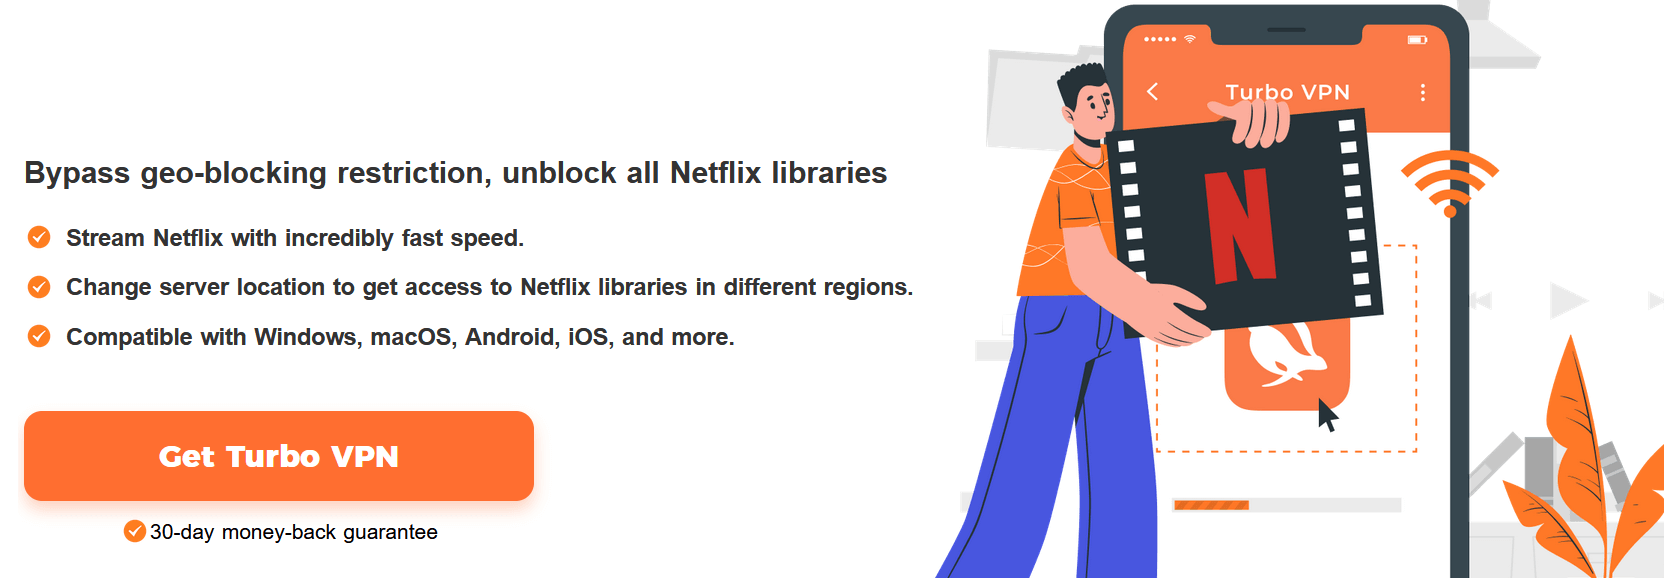 Turbo VPN for Netflix